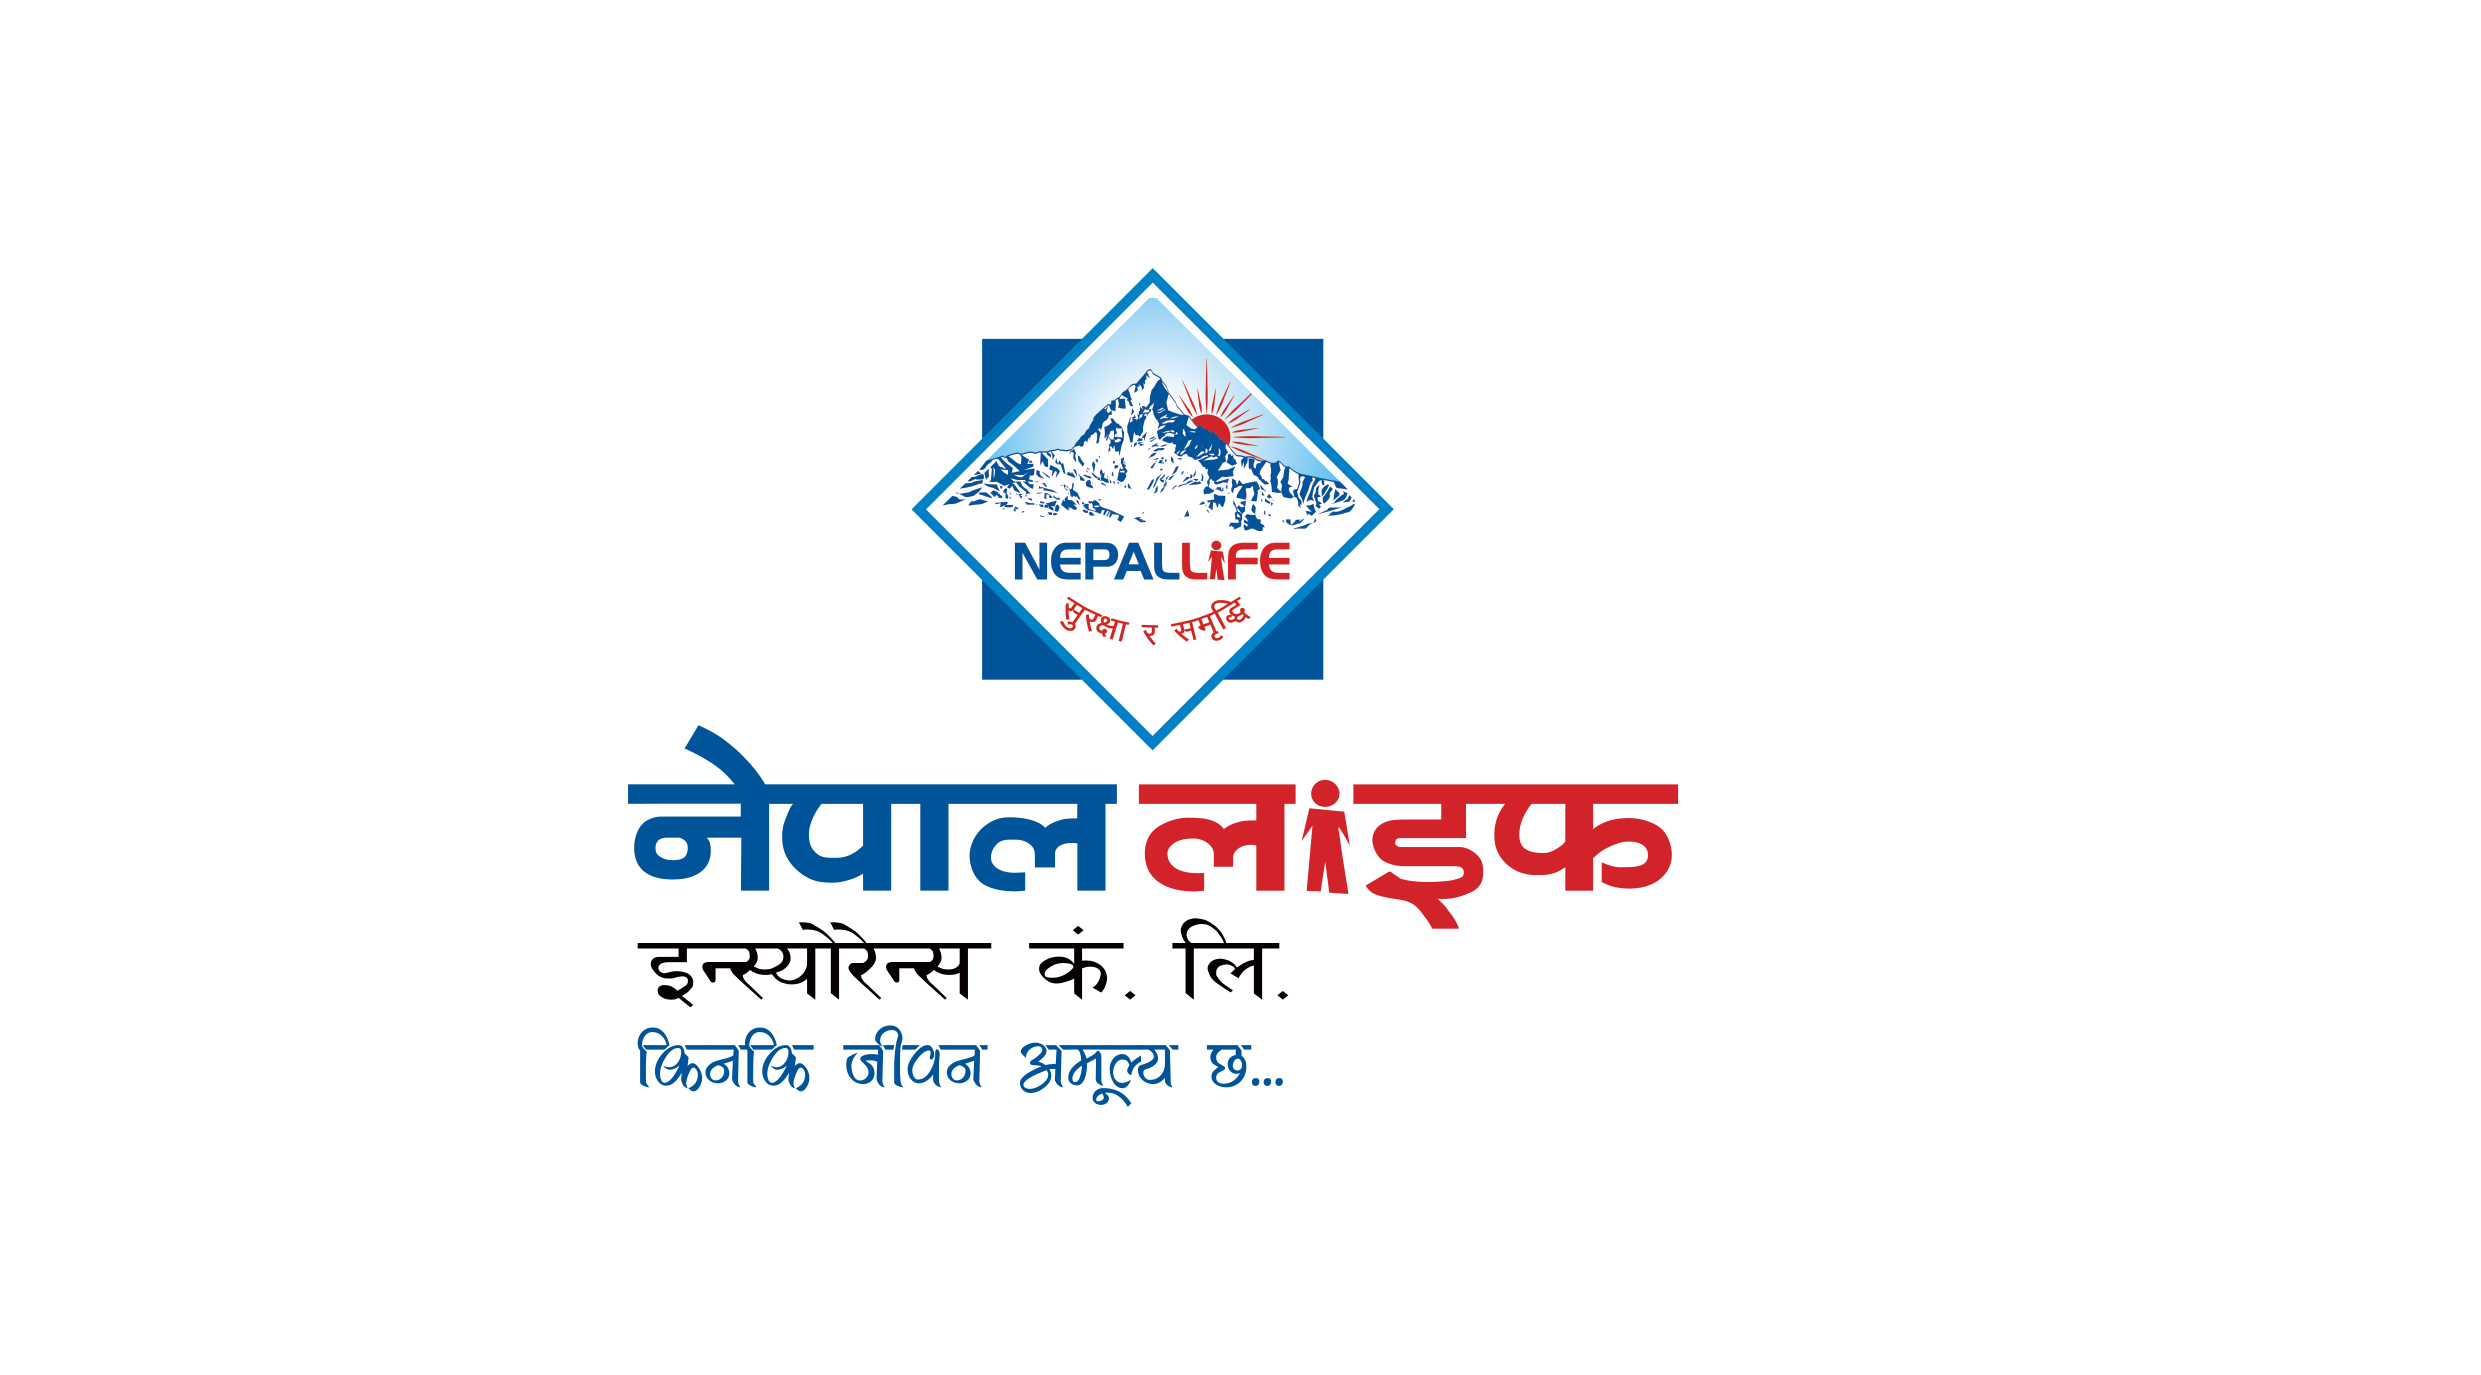 अब कनेक्ट आइपीएसमार्फत नेपाल लाइफको बीमा शुल्क भुक्तानी गर्न सकिने